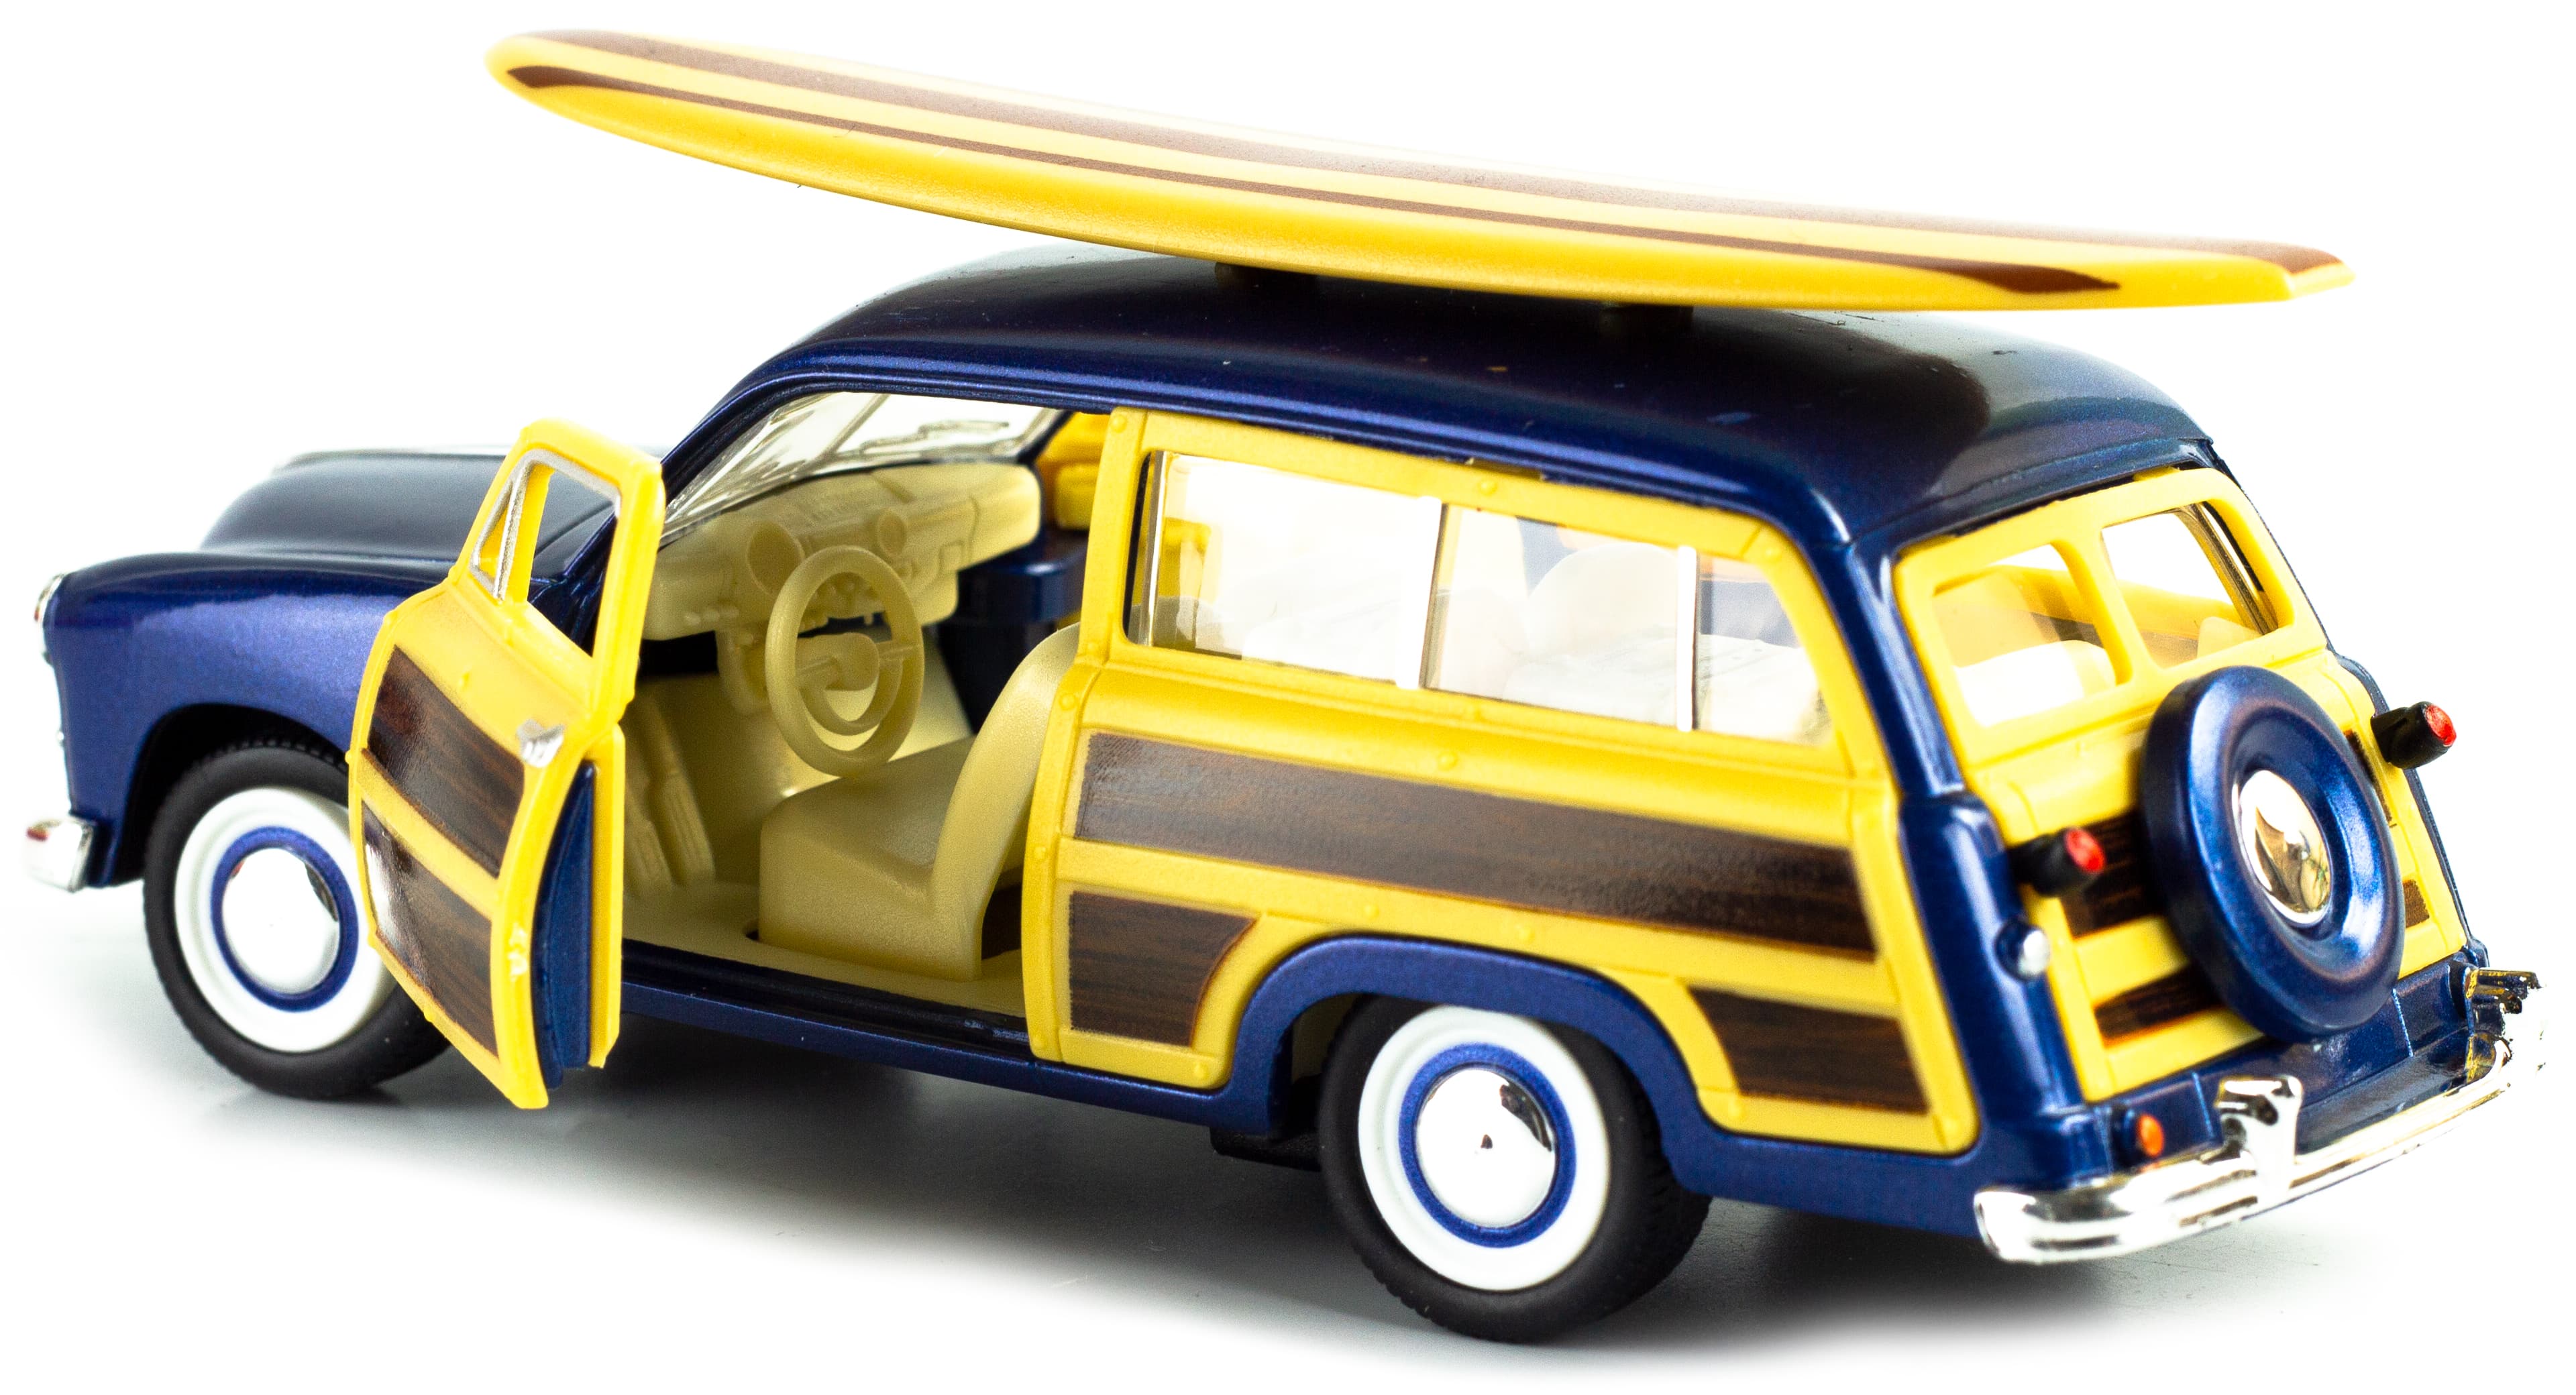 Машинка металлическая Kinsmart 1:40 «1949 Ford Woody Wagon Wooden surfboard» KT5402DS1 инерционная / Микс